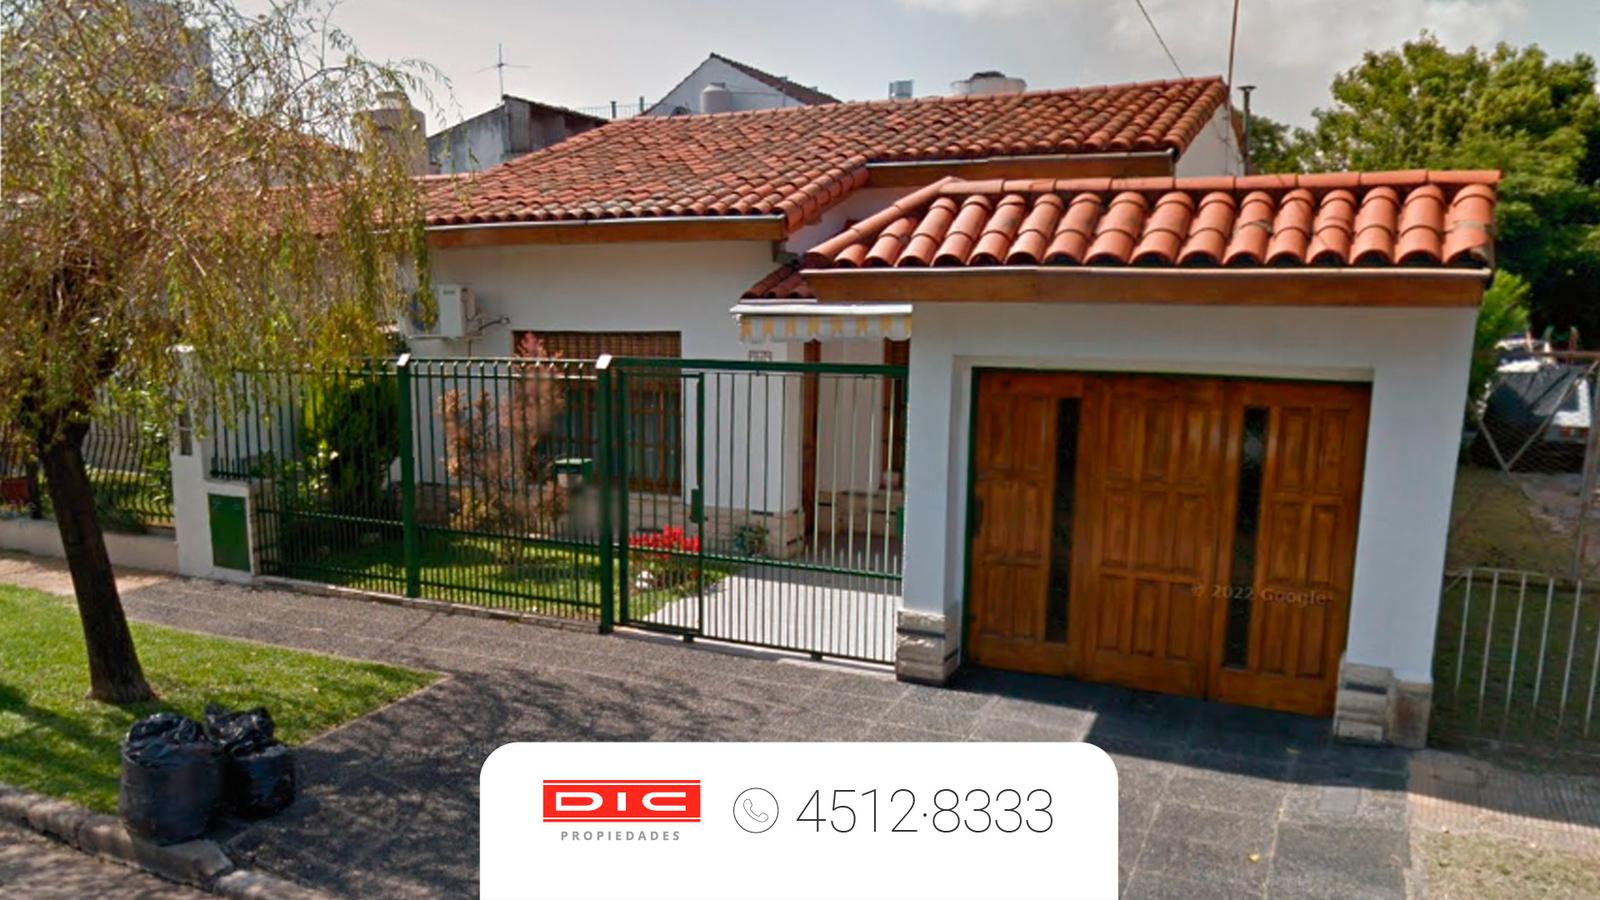 #5244816 | Sale | House | Carapachay (Dic Propiedades)